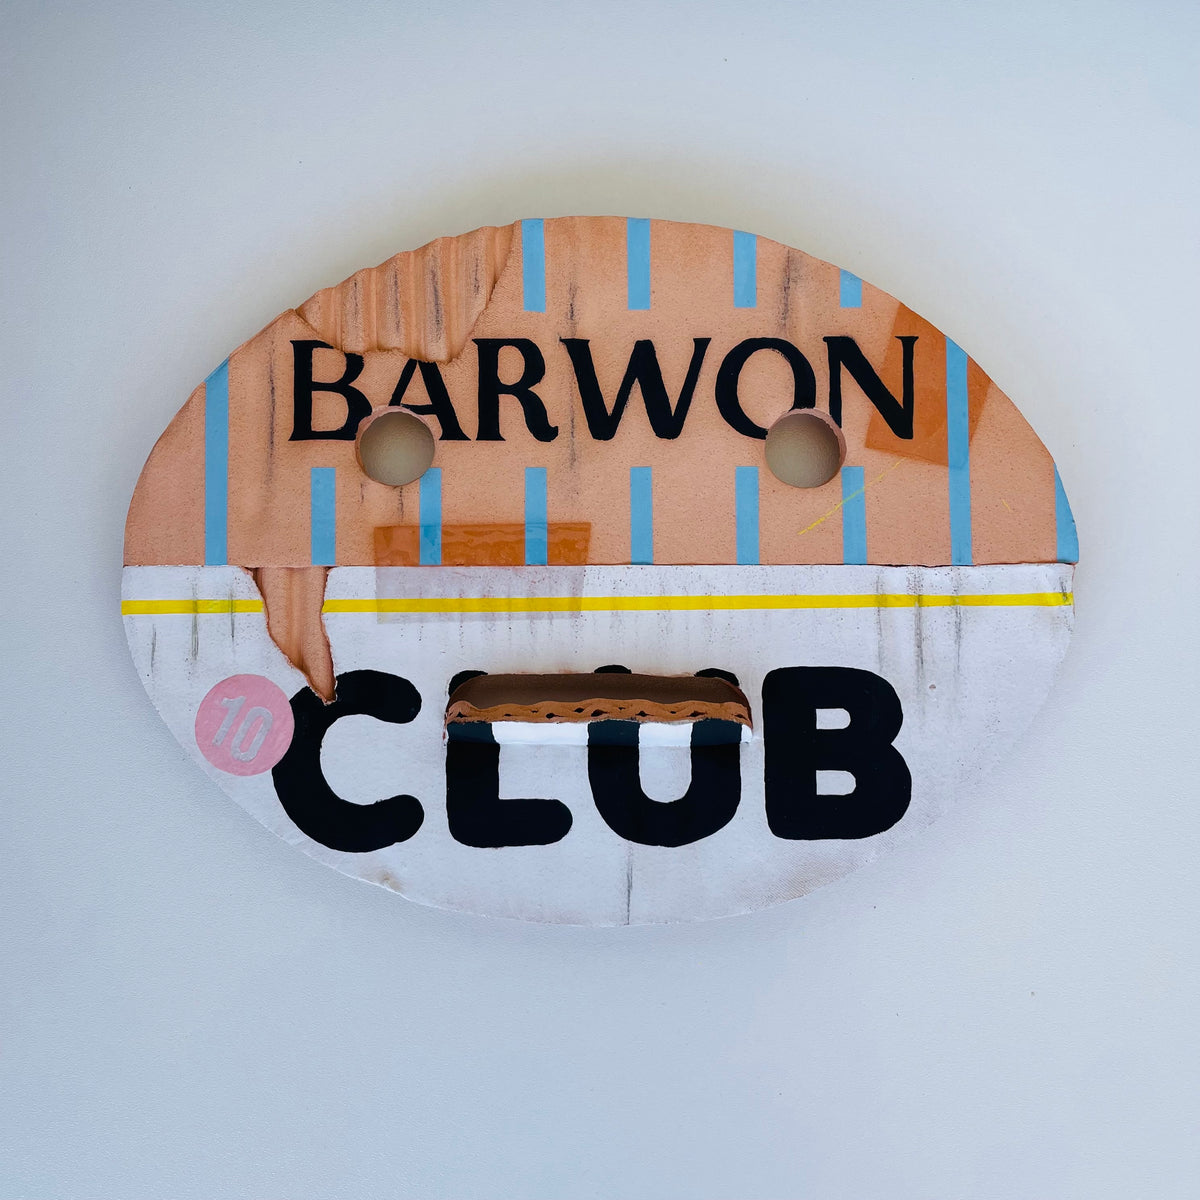 Barwon Club